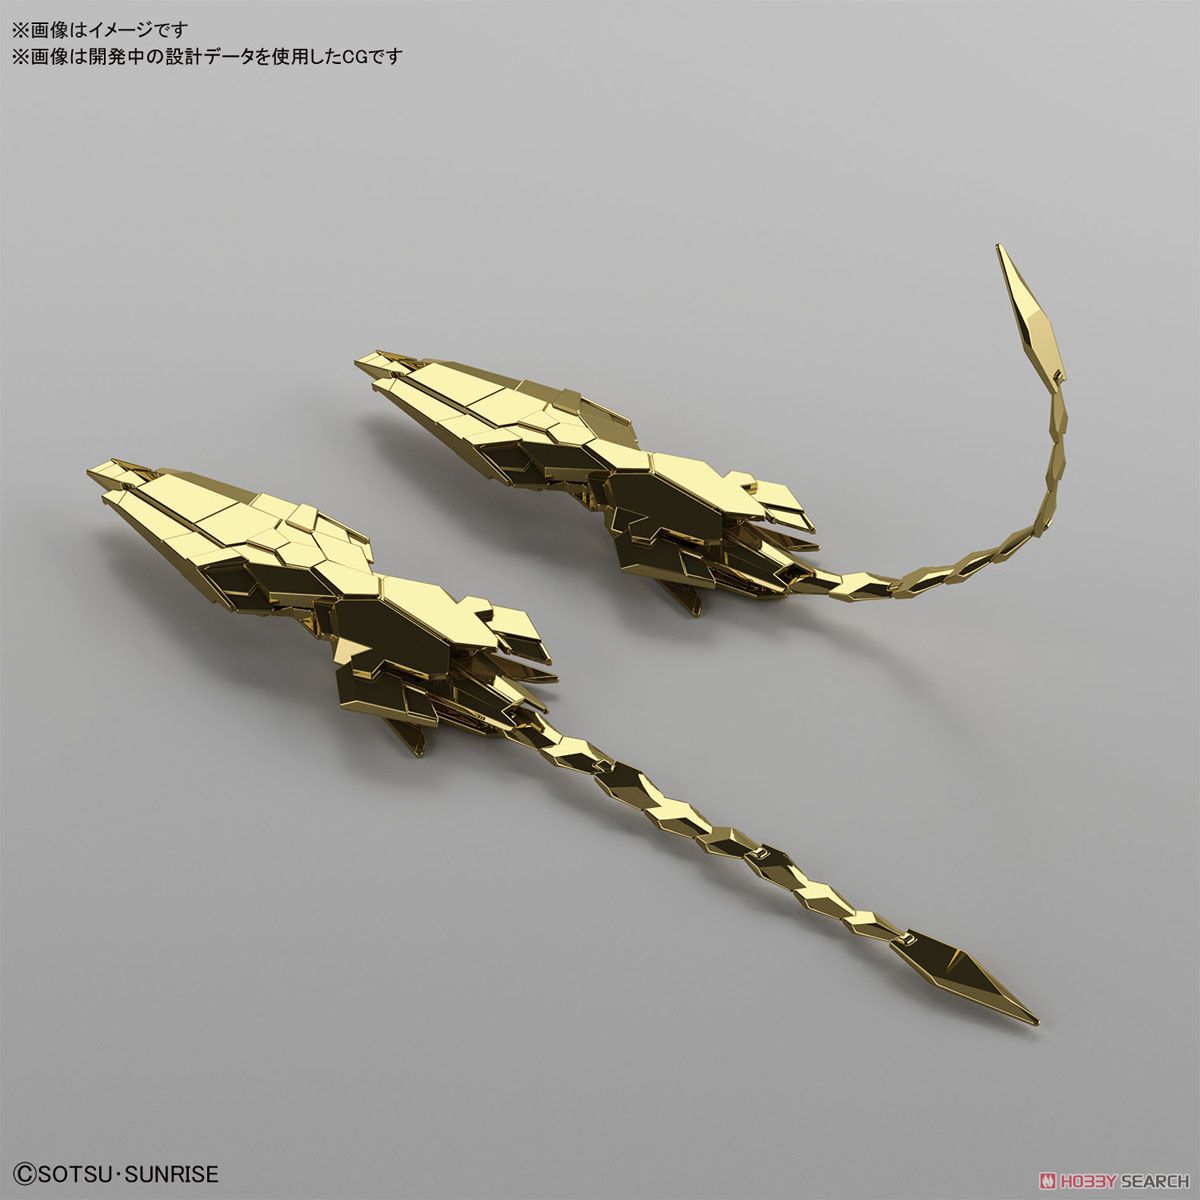 Gundam HG Unit 3 Phenex (Unicorn Mode) (Narrative Ver.) (Gold Coating)